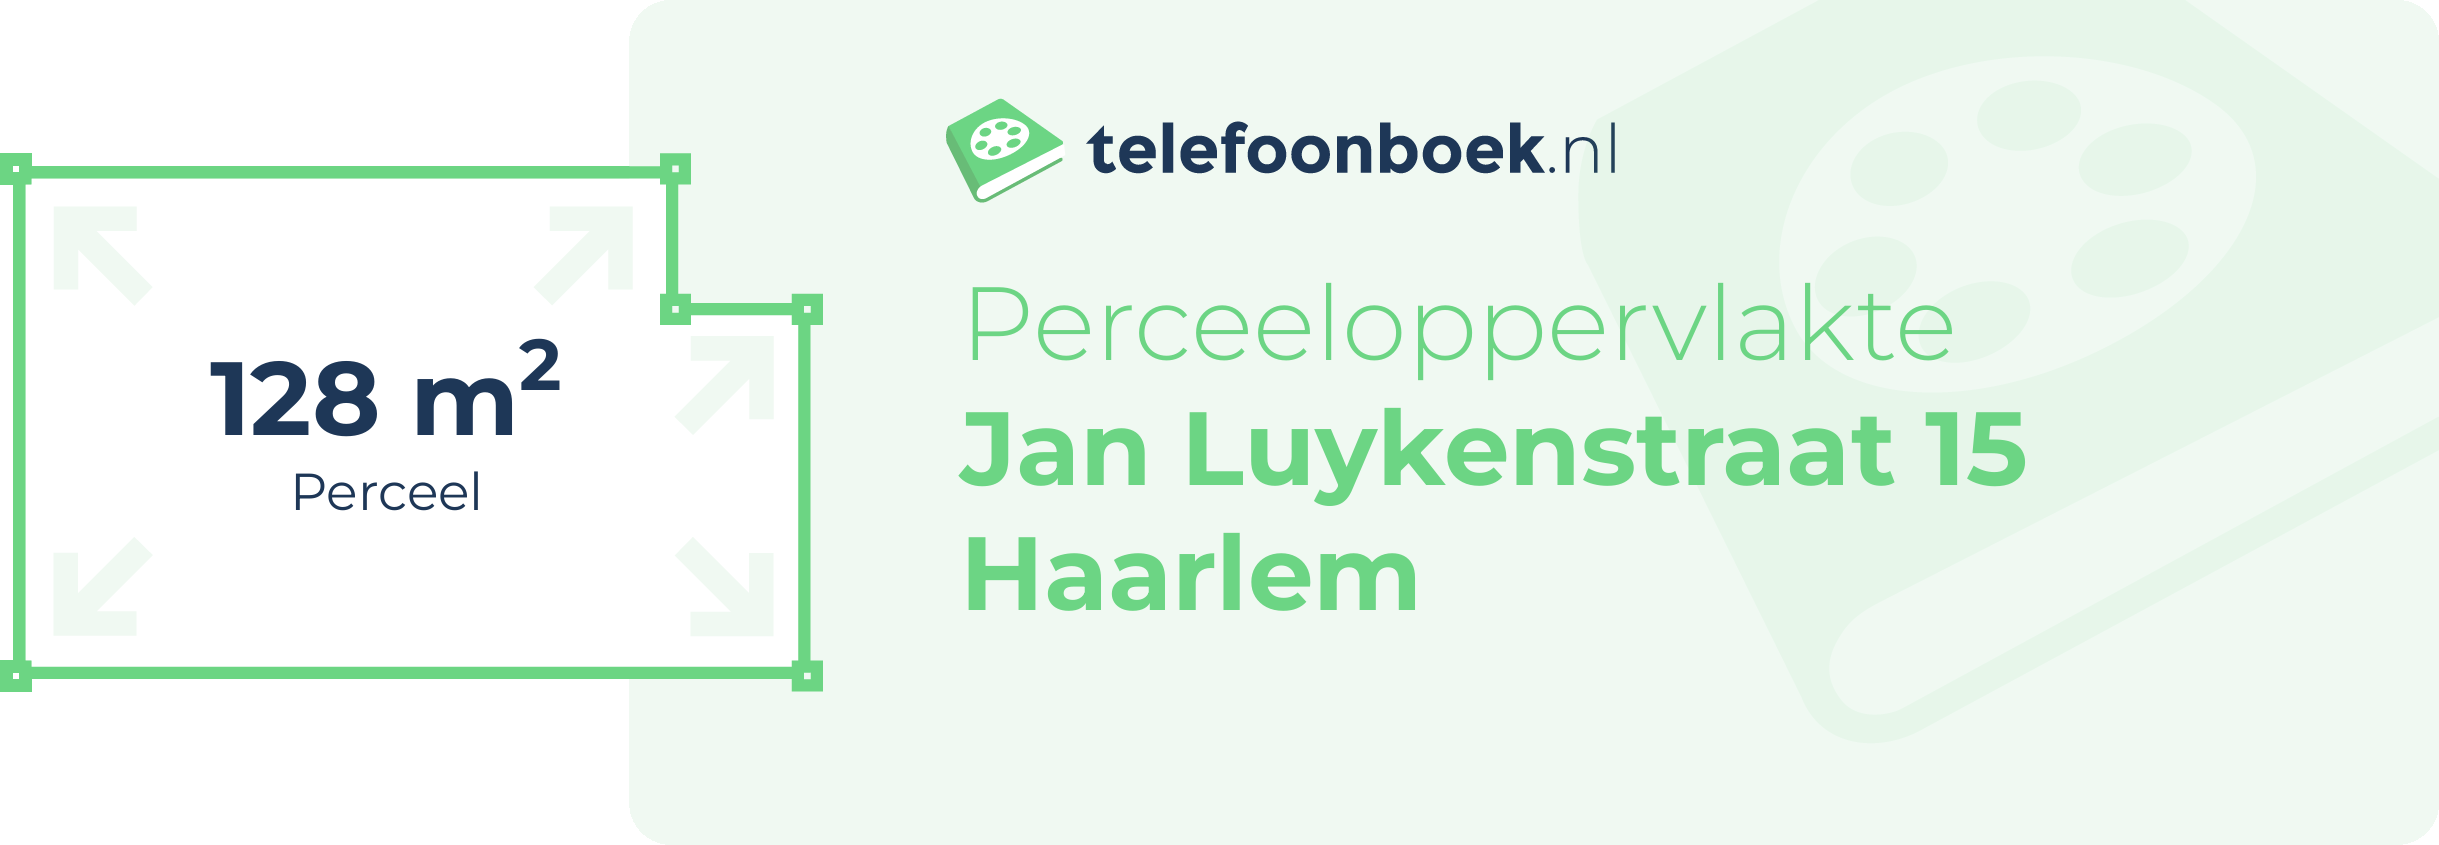 Perceeloppervlakte Jan Luykenstraat 15 Haarlem